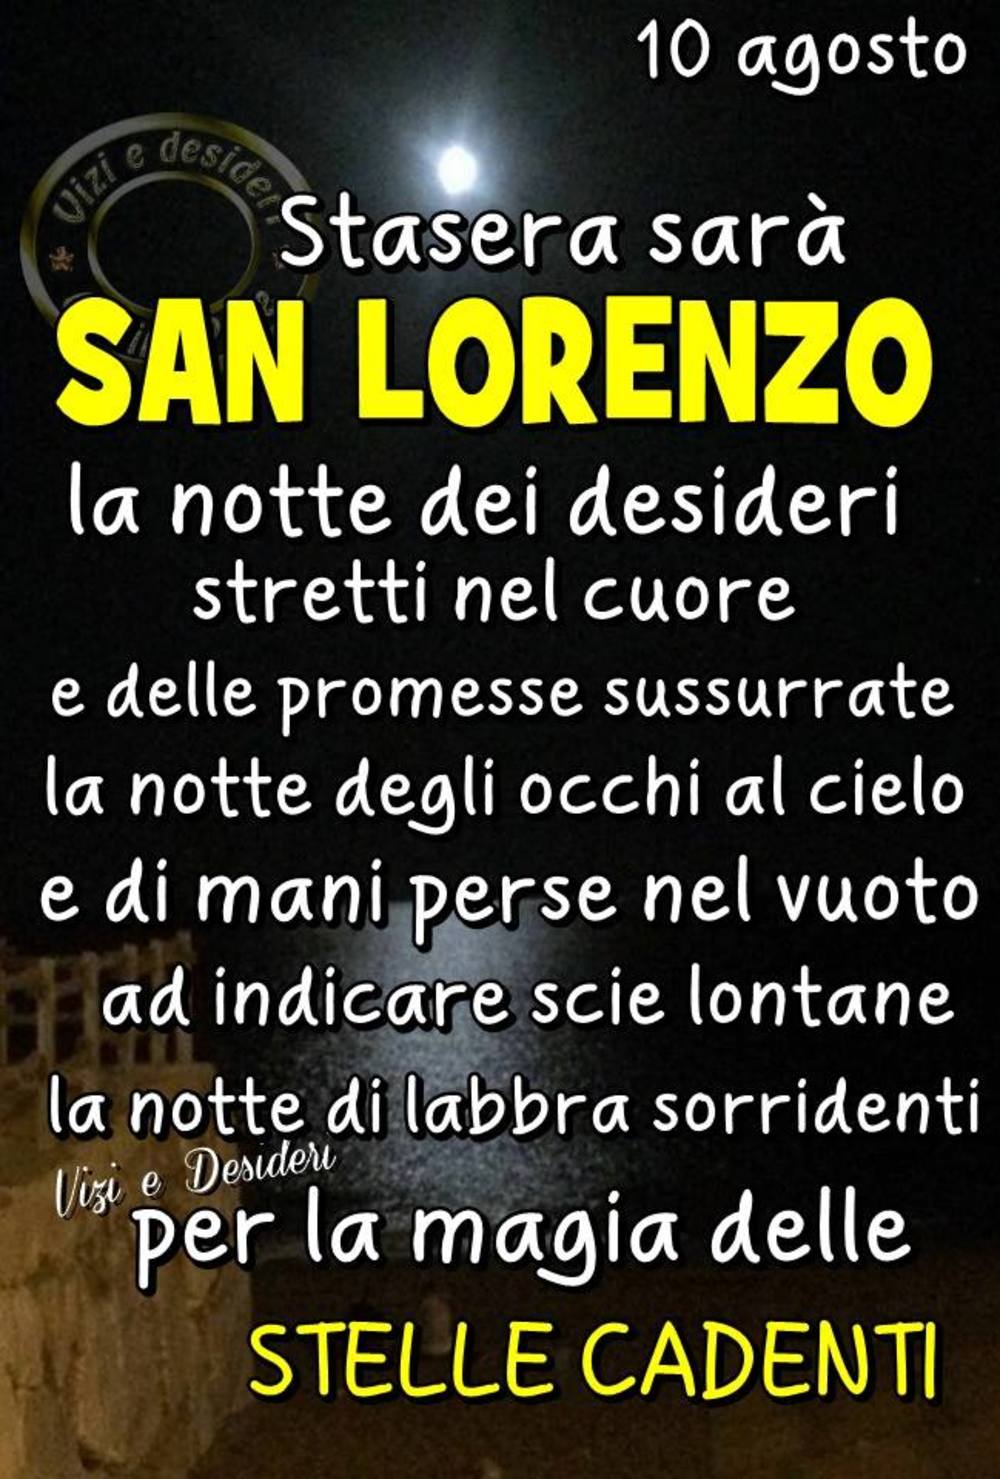 (4) Immagini e frasi di notte di san lorenzo da scaricare gratis e da condividere - 